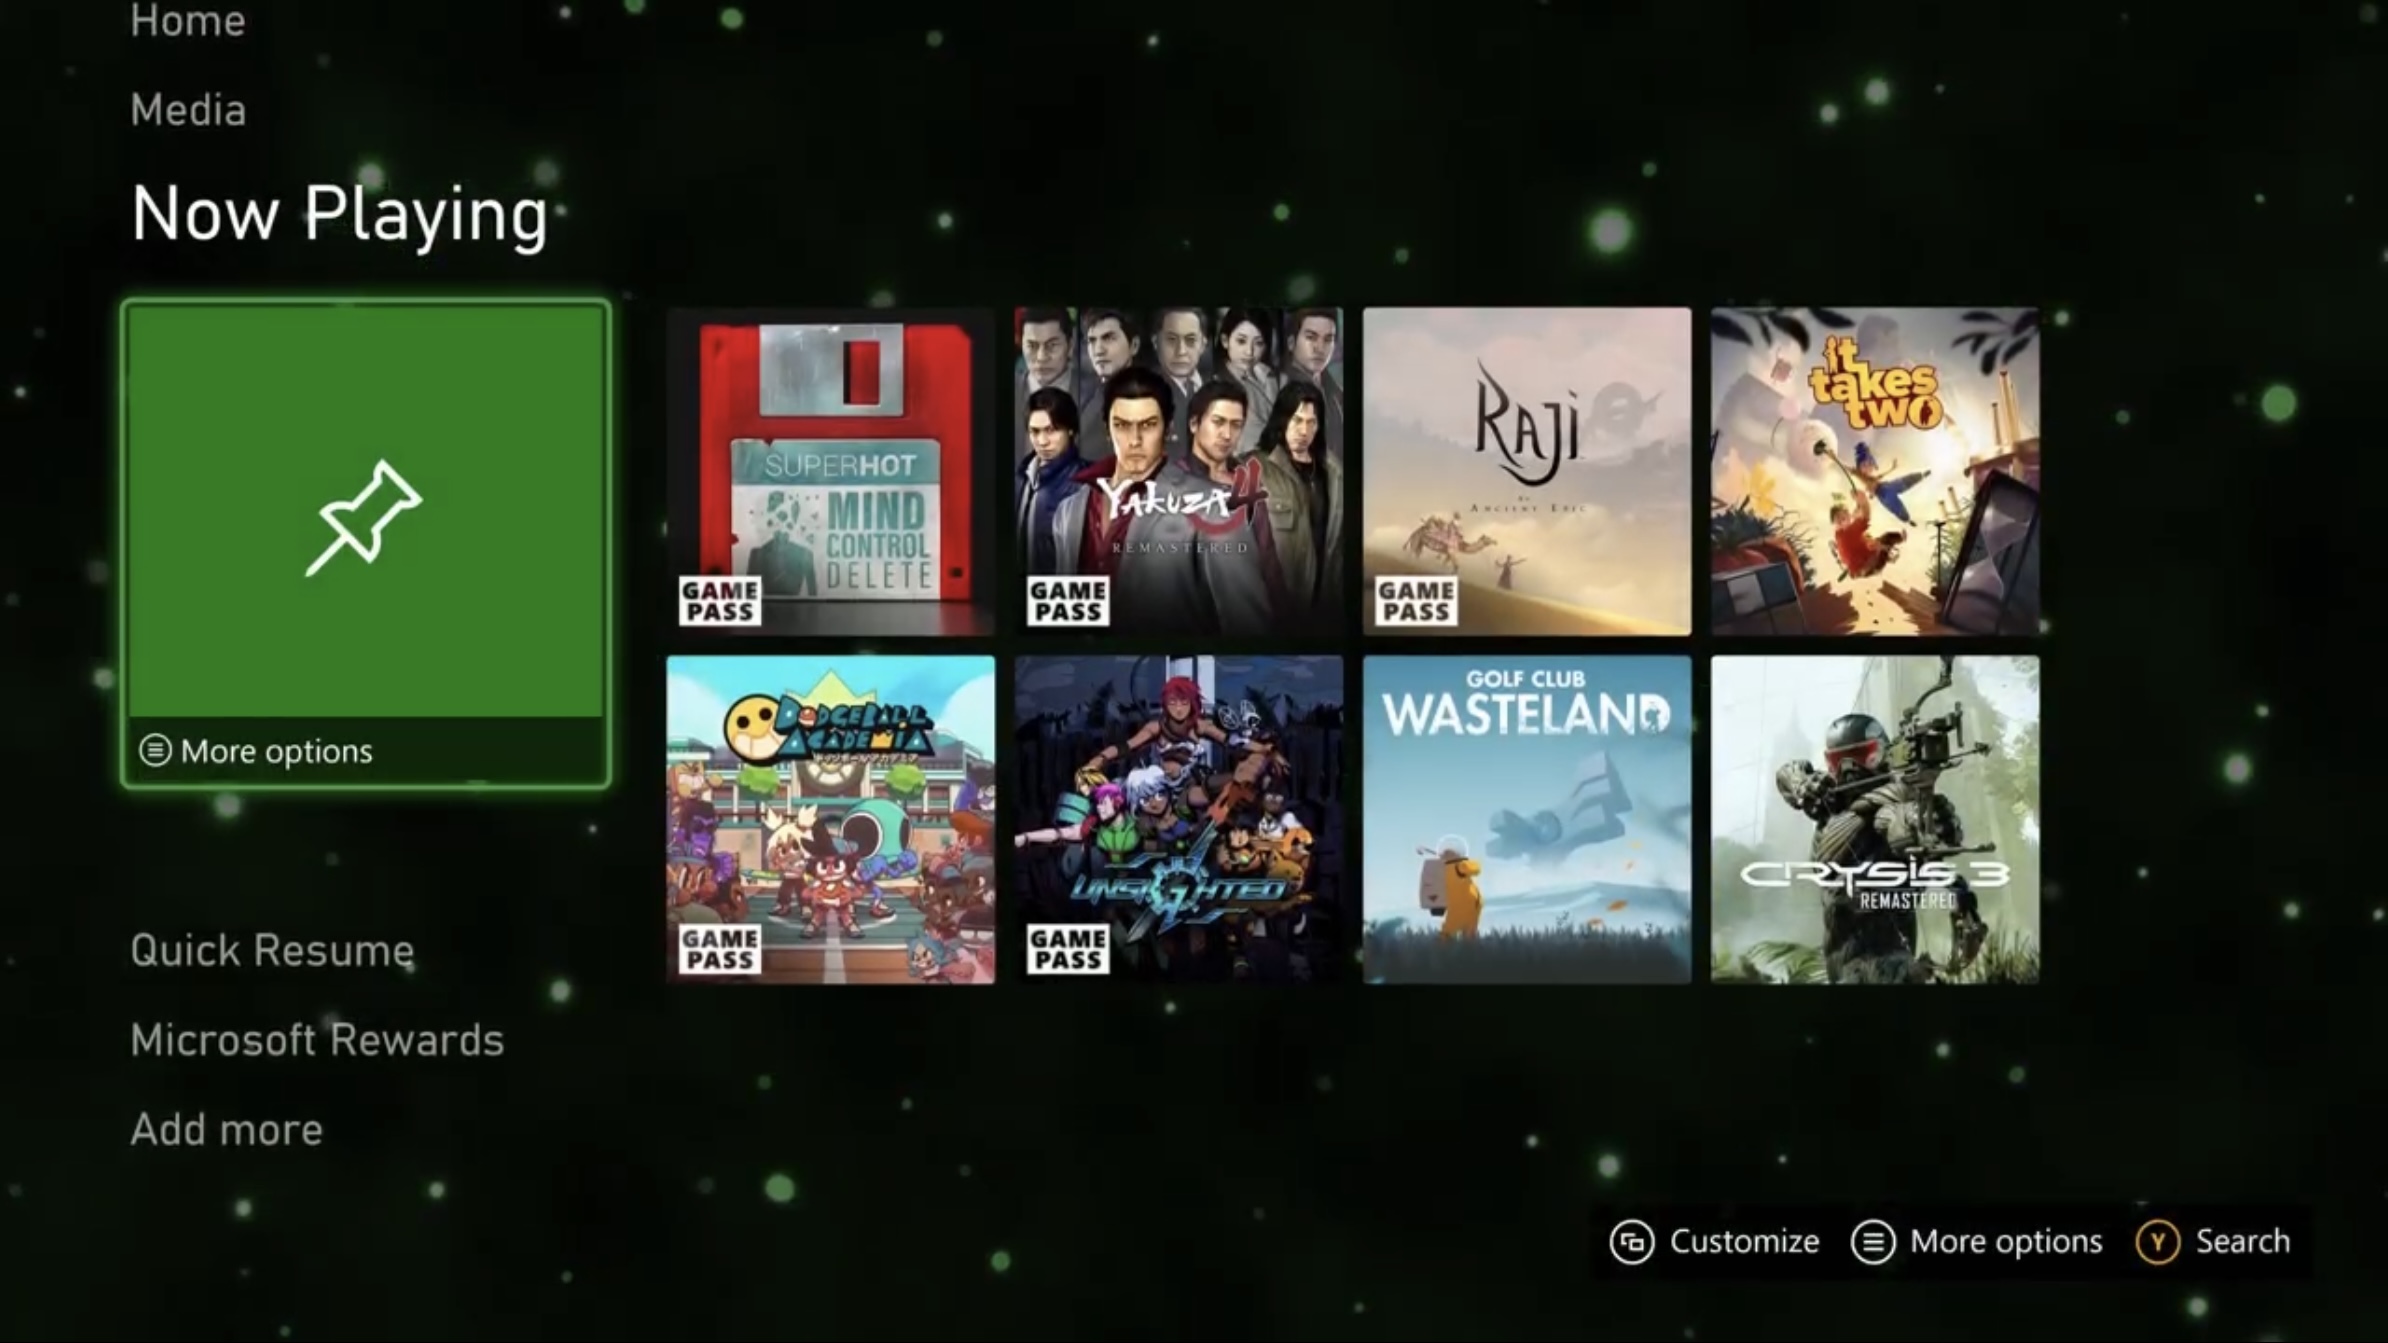 Jogos da Xbox Series X, incluindo todos os exclusivos, first-party